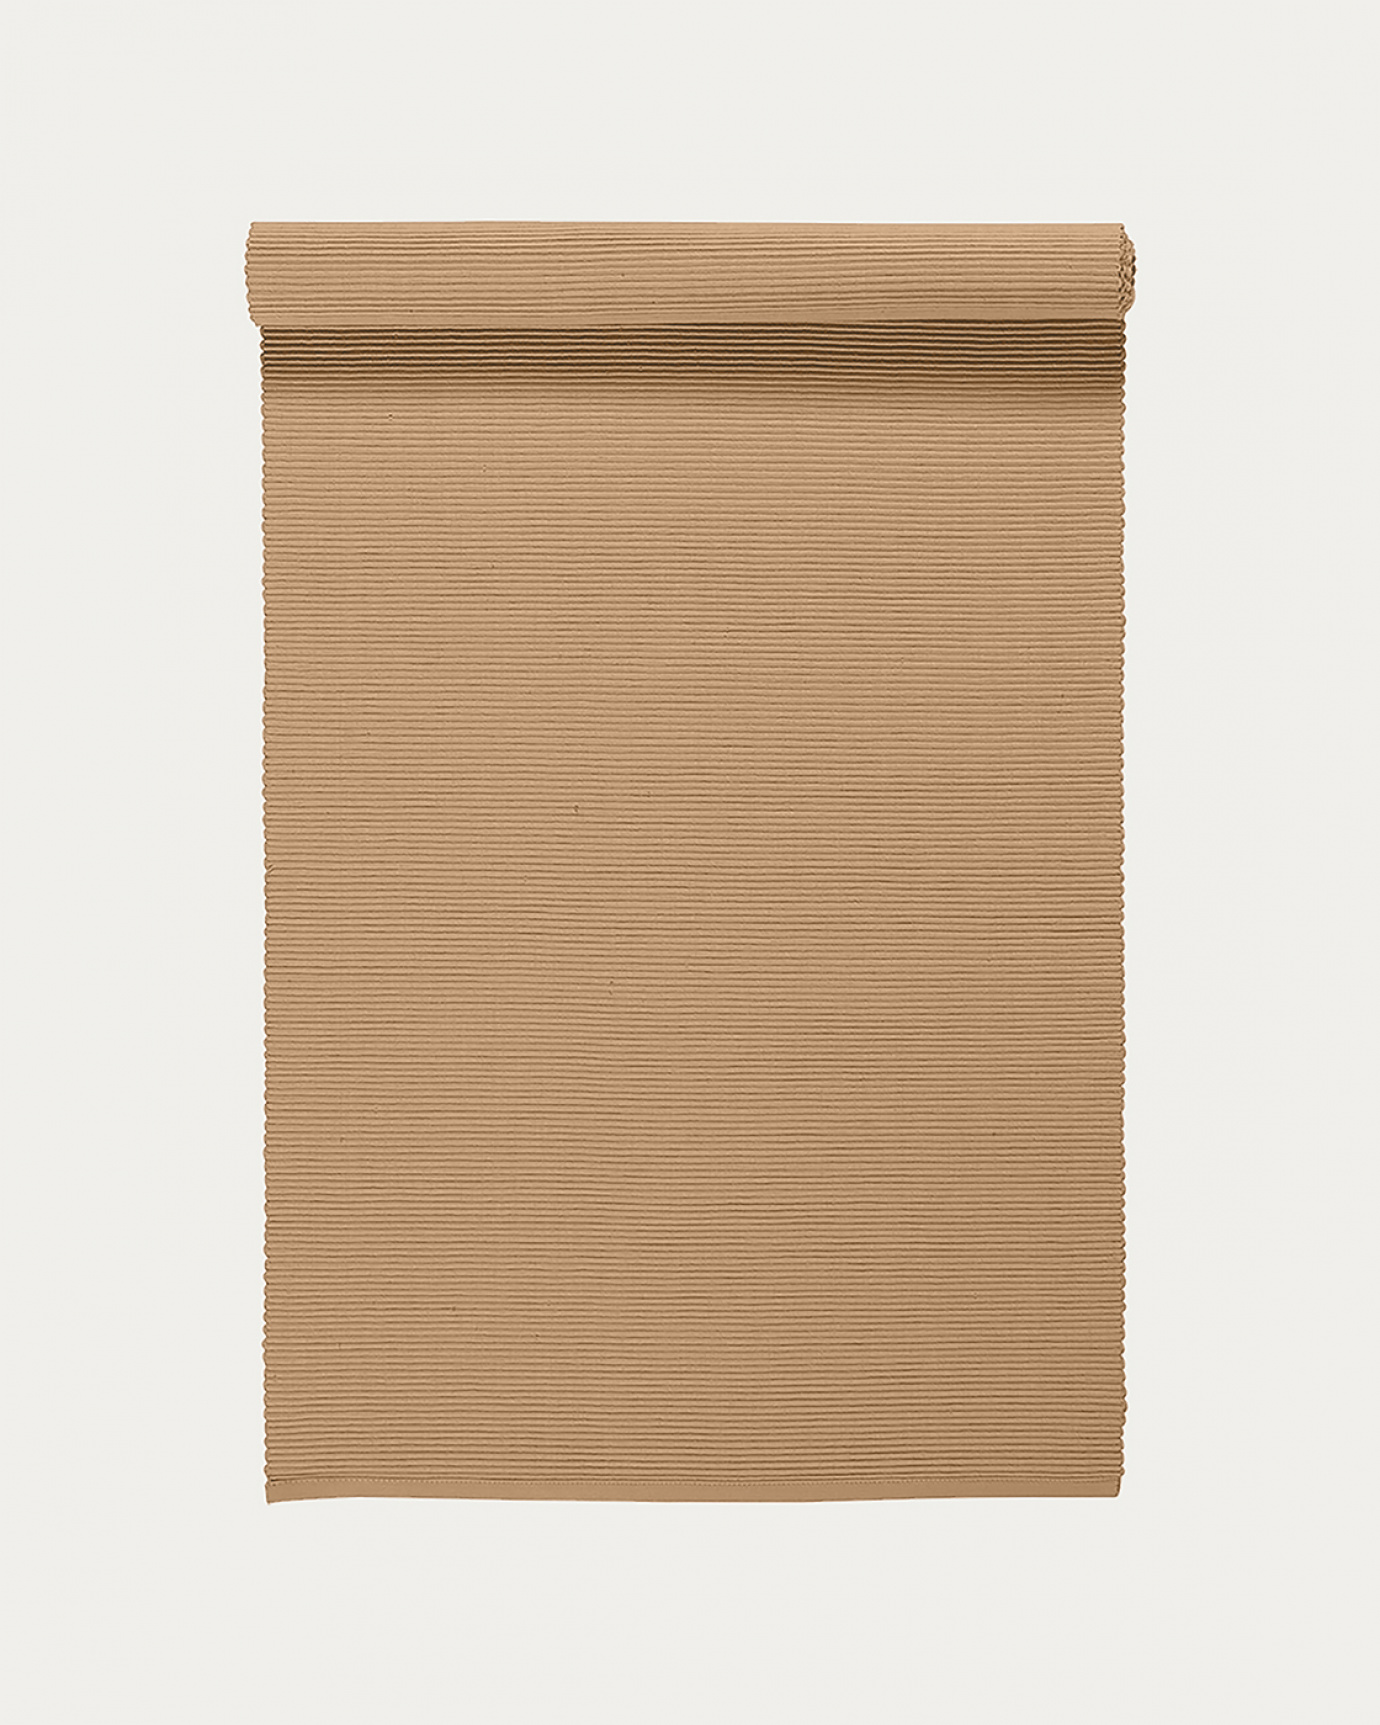 Image du produit chemin de table UNI camel en coton doux de qualité côtelée de LINUM DESIGN. Taille 45 x 150 cm.